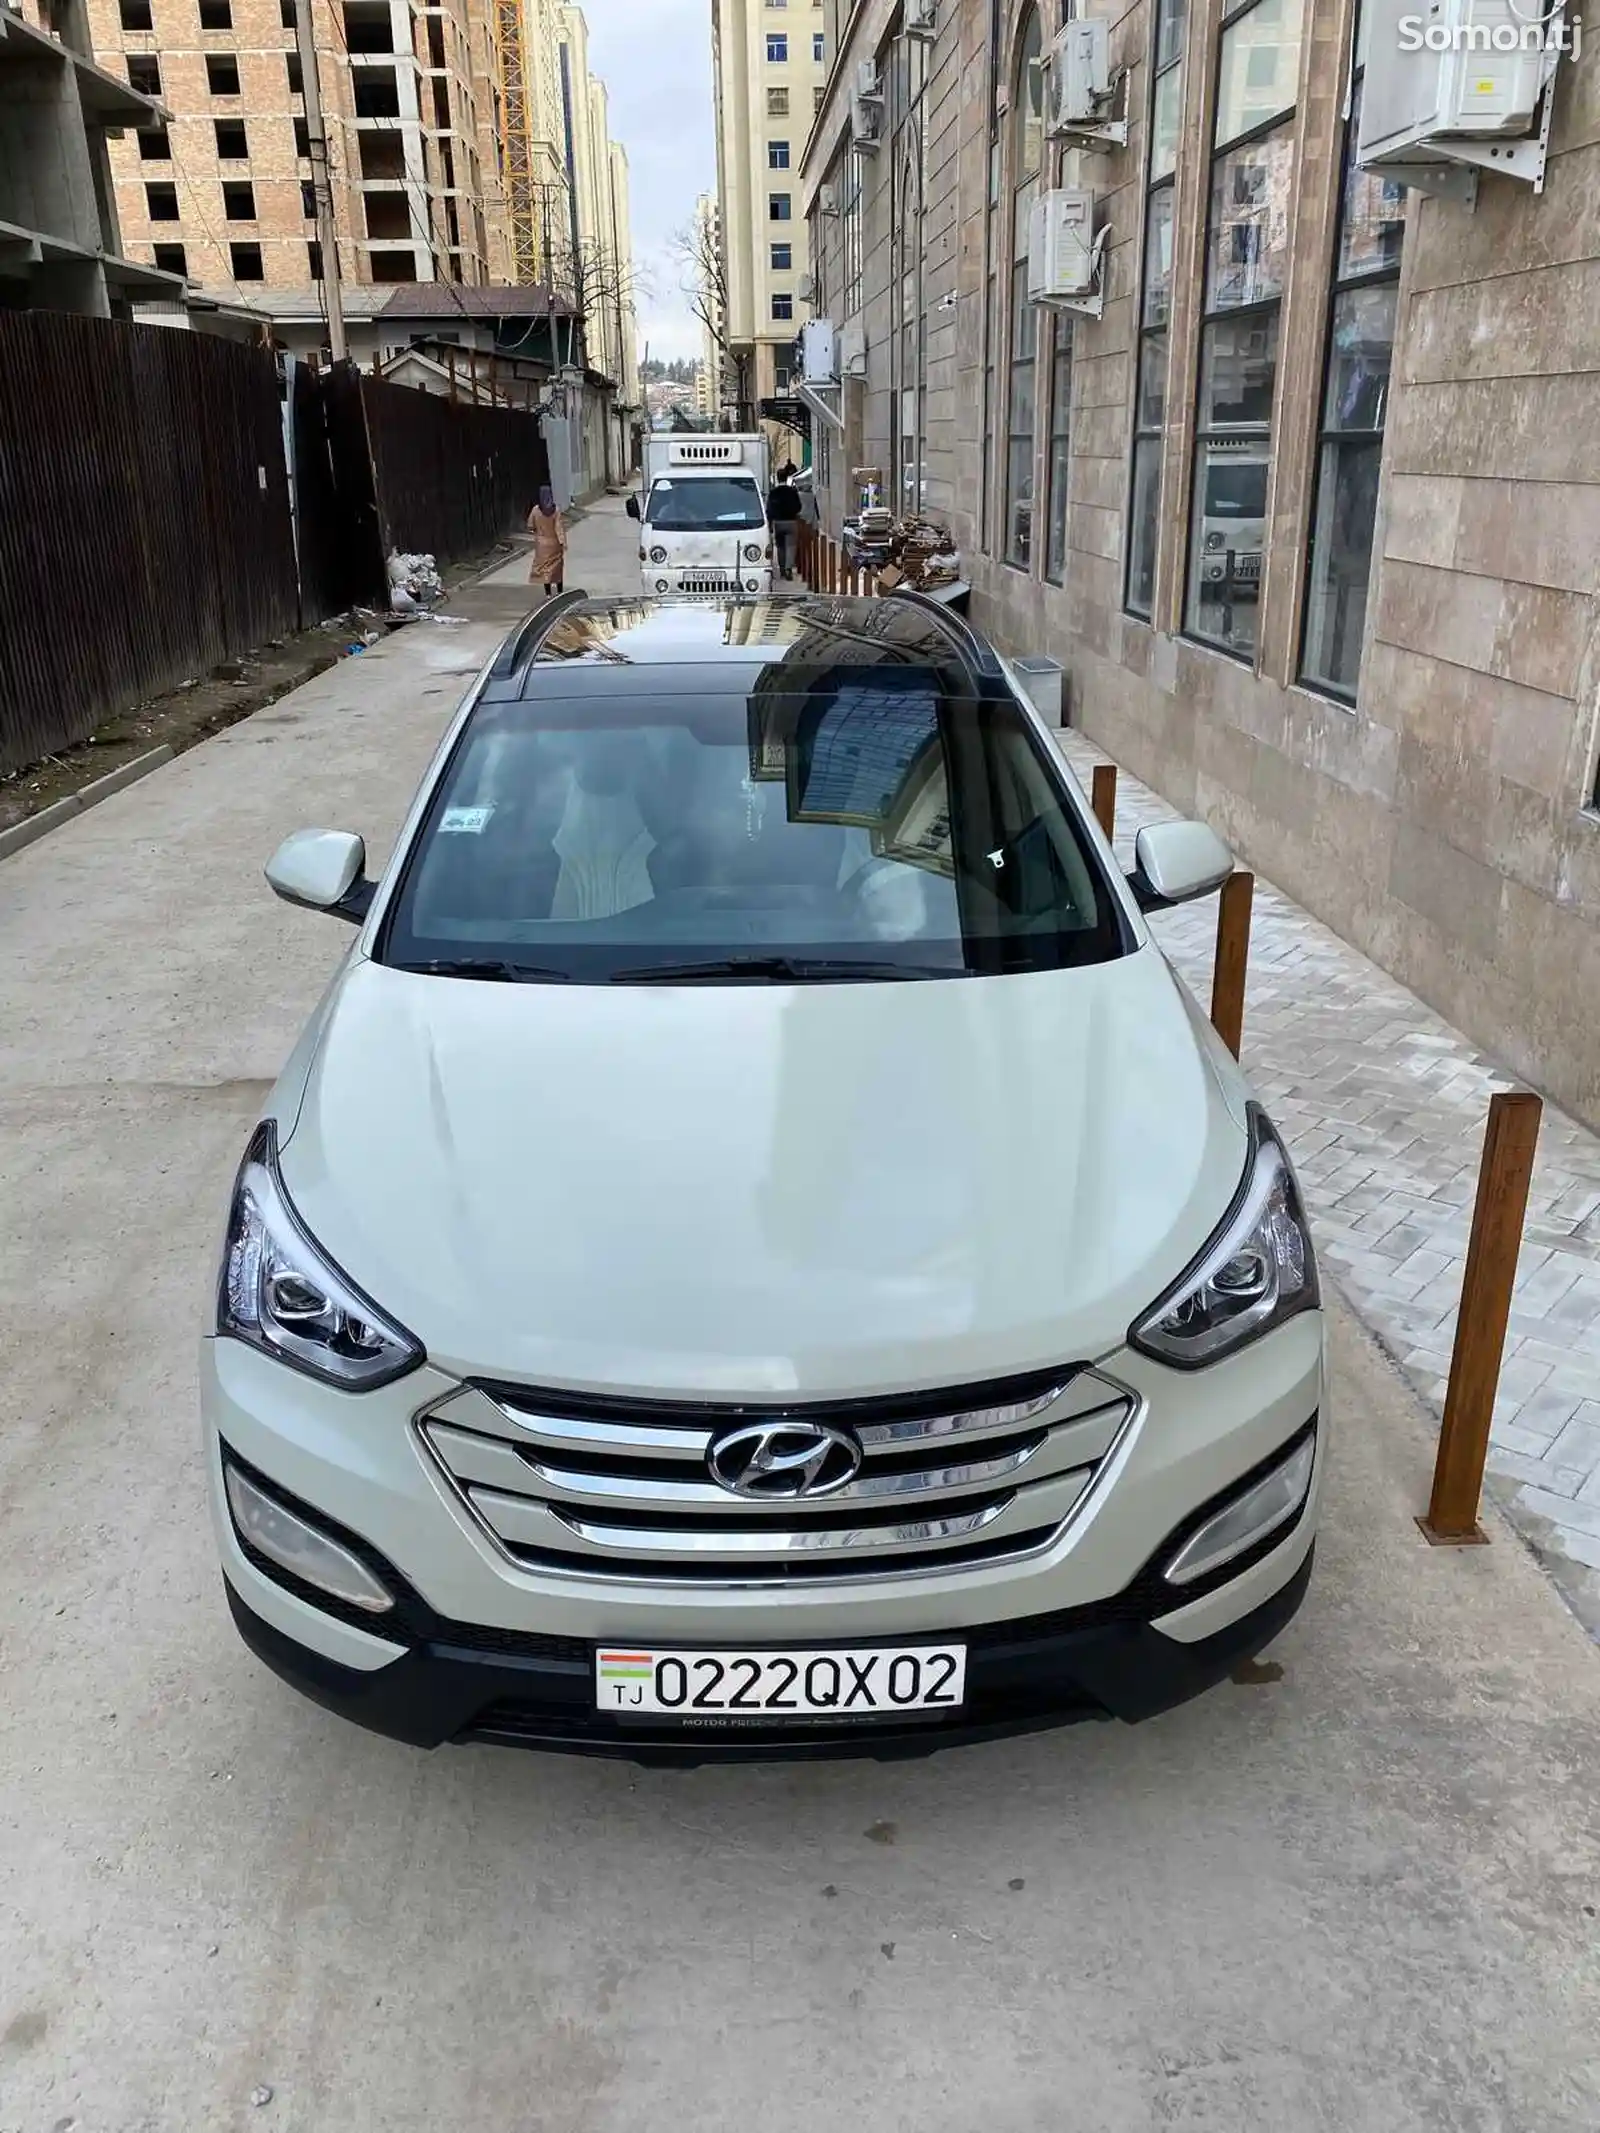 Hyundai Santa Fe, 2014-1